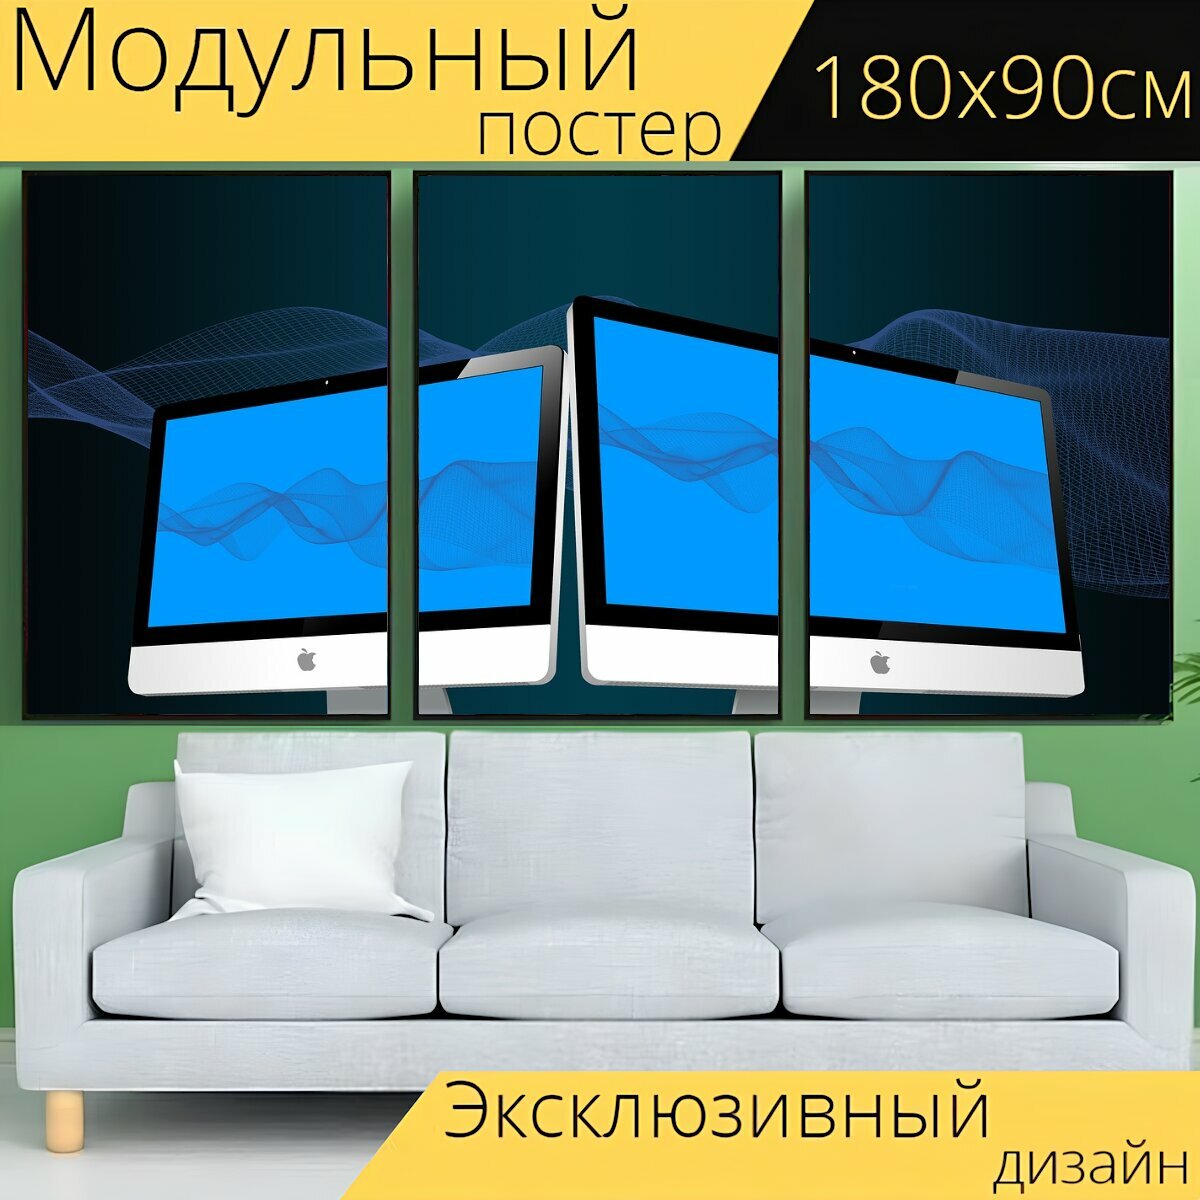 Модульный постер "Экран, монитор, отображать" 180 x 90 см. для интерьера